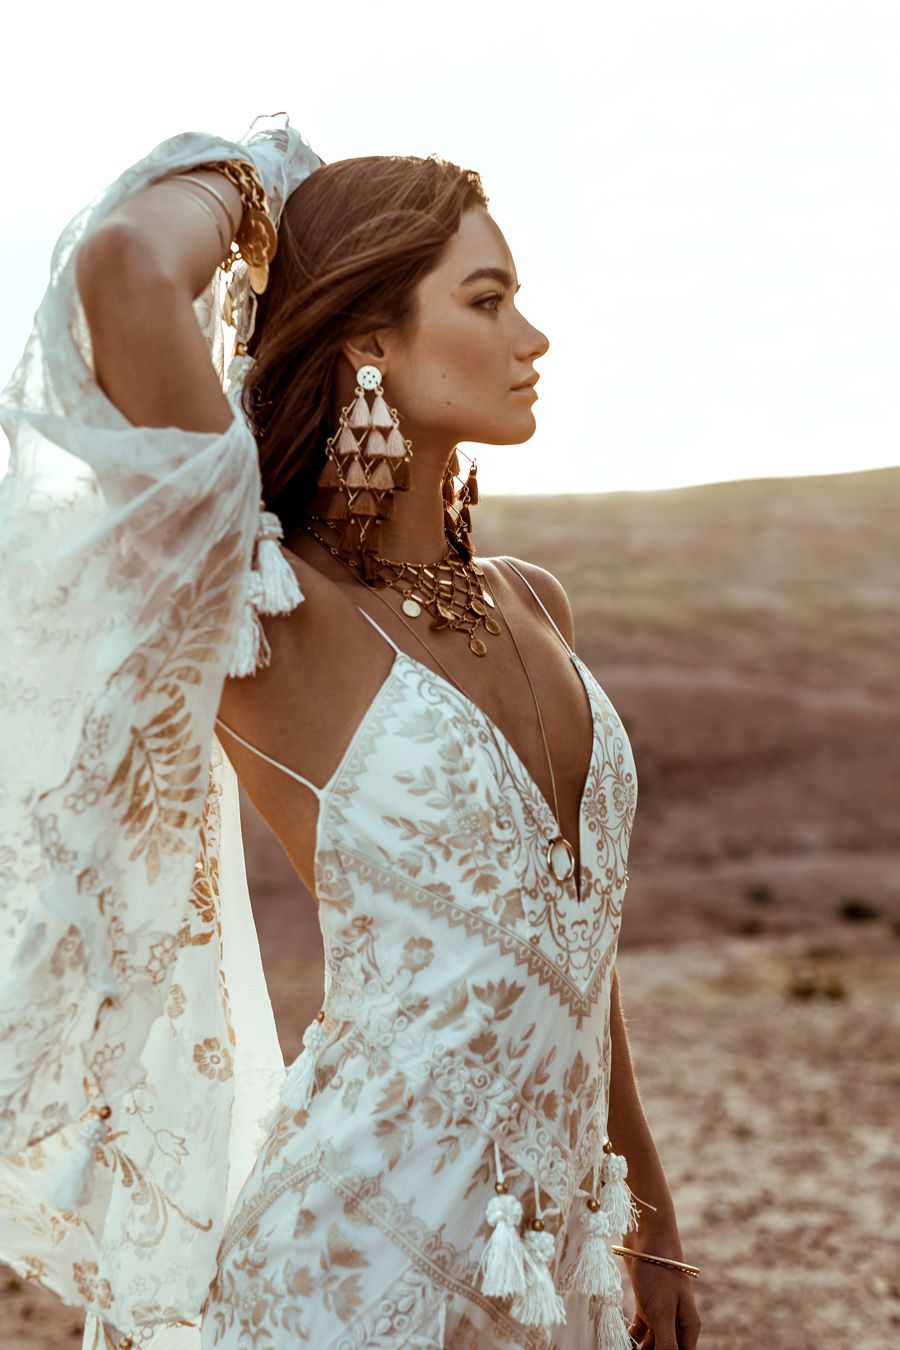 La marca de vestidos de novia con alma 'boho' - Rue de de novia de inspiración hippie